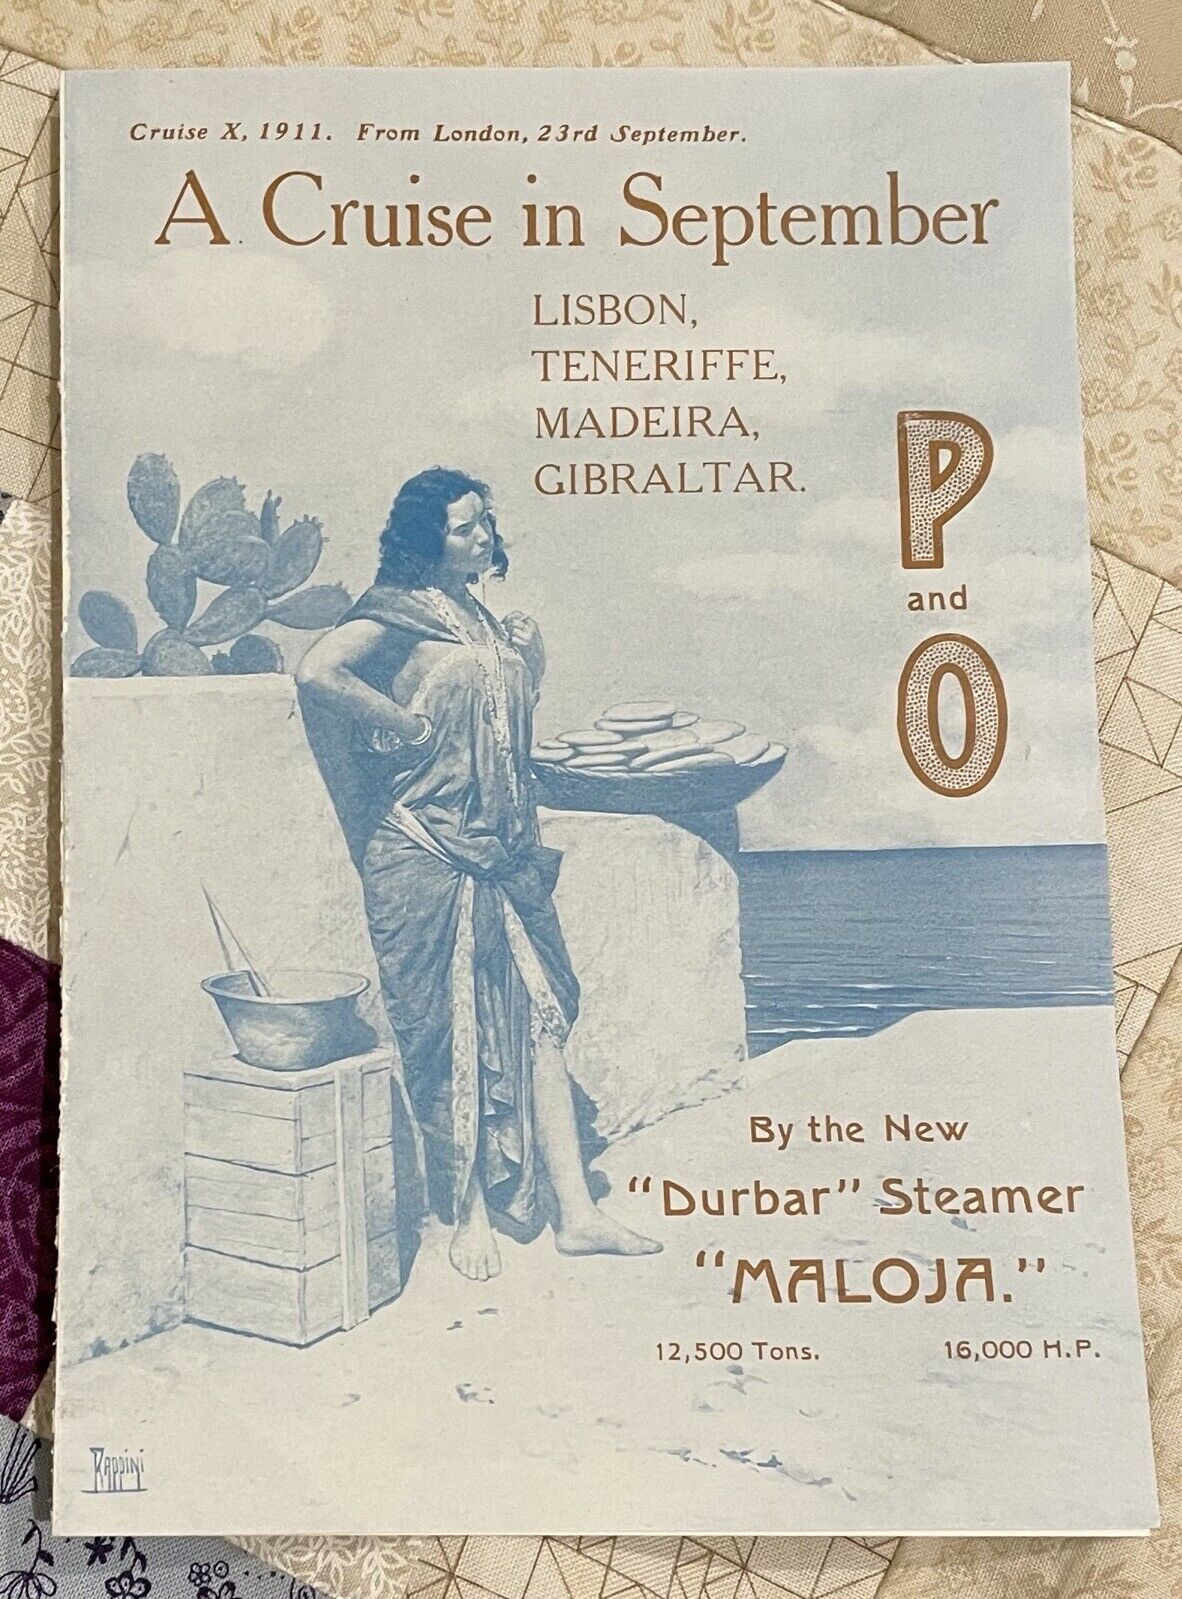 P And O Steamer “maloja” Flyer For September, 1911 Cruise.